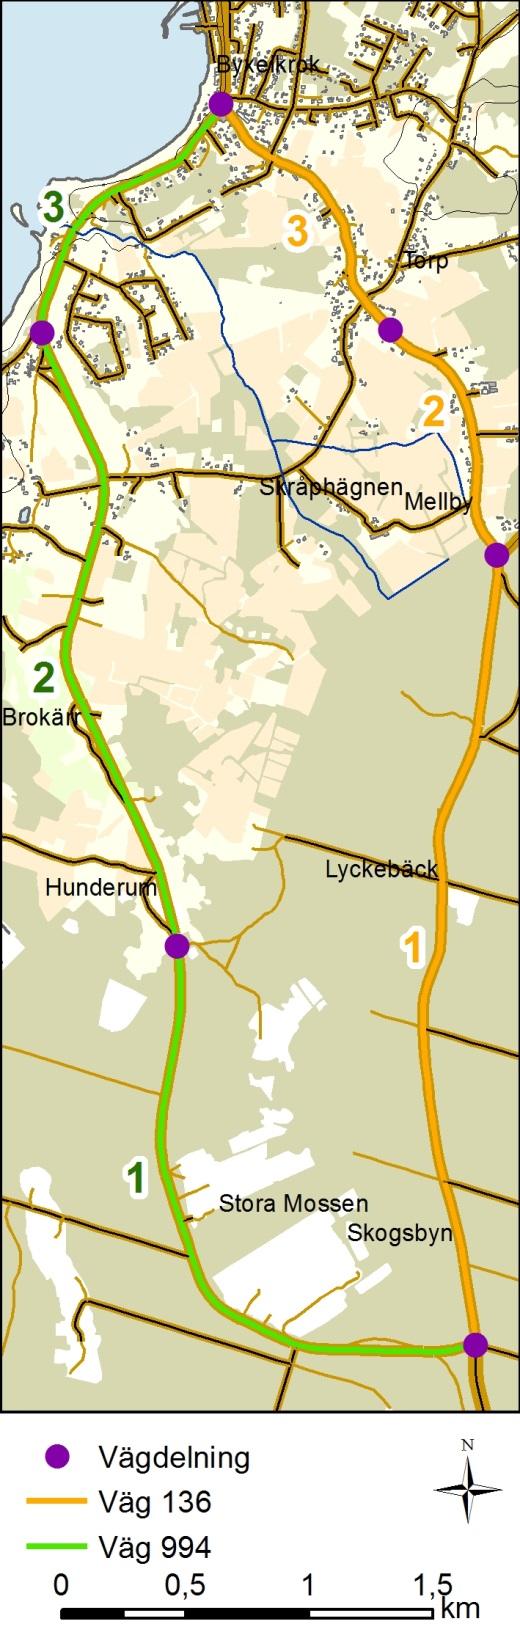 2.1 Trafik De vägar som studeras är väg 136 och 994. Avståndet mellan cirkulationsplatsen i Byxelkrok till cirkulationsplatsen vid Rosendal i syd är 5,6 km längs väg 136 och 6,5 km längs väg 994.